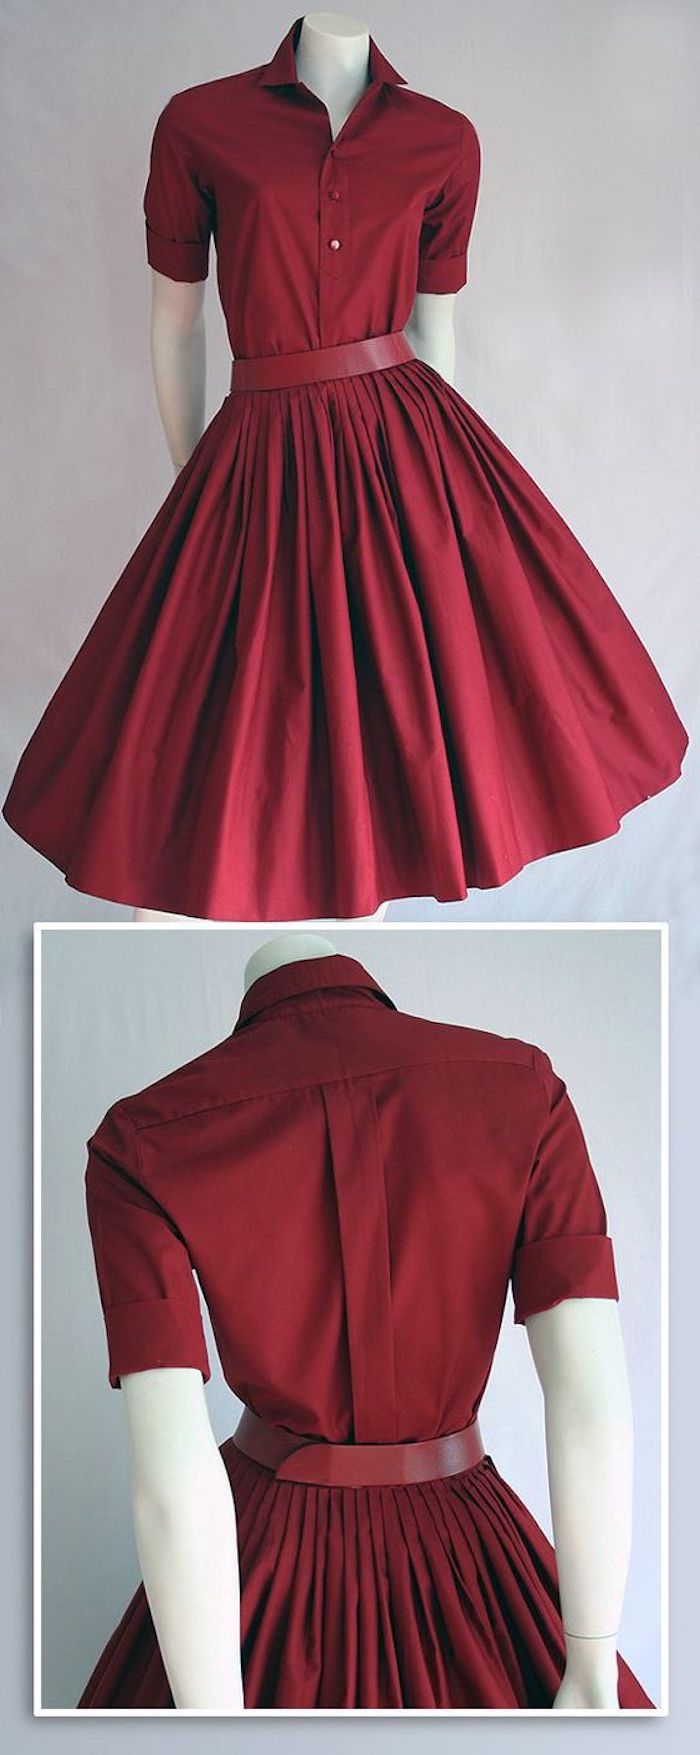 knielanges Kleid in Weinrot mit Plissee und Hemdkragen, roter Kleidergürtel